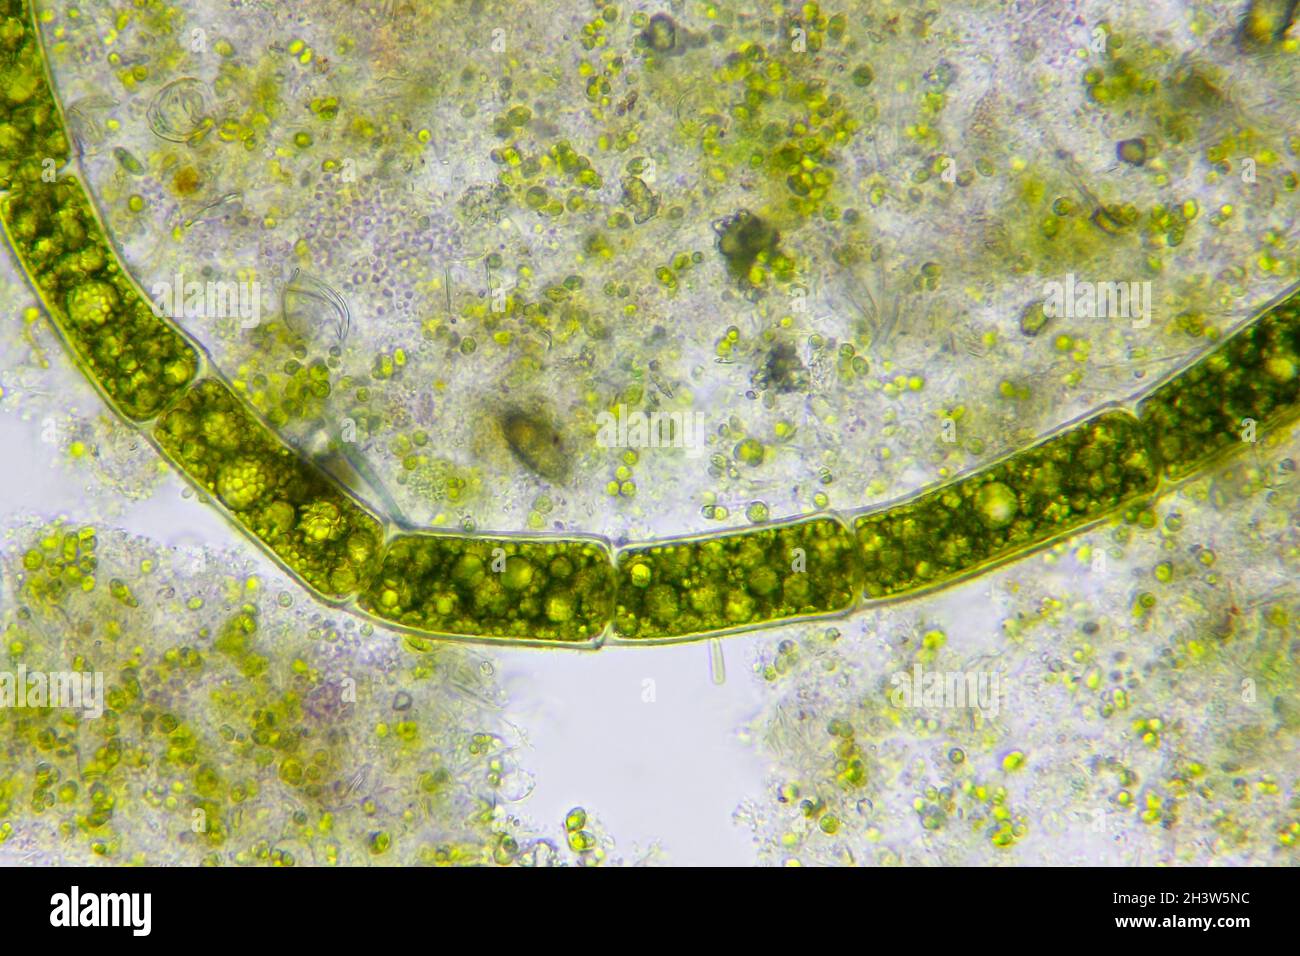 Vue microscopique du filament d'algues vertes entre les détritus.Éclairage à fond clair. Banque D'Images